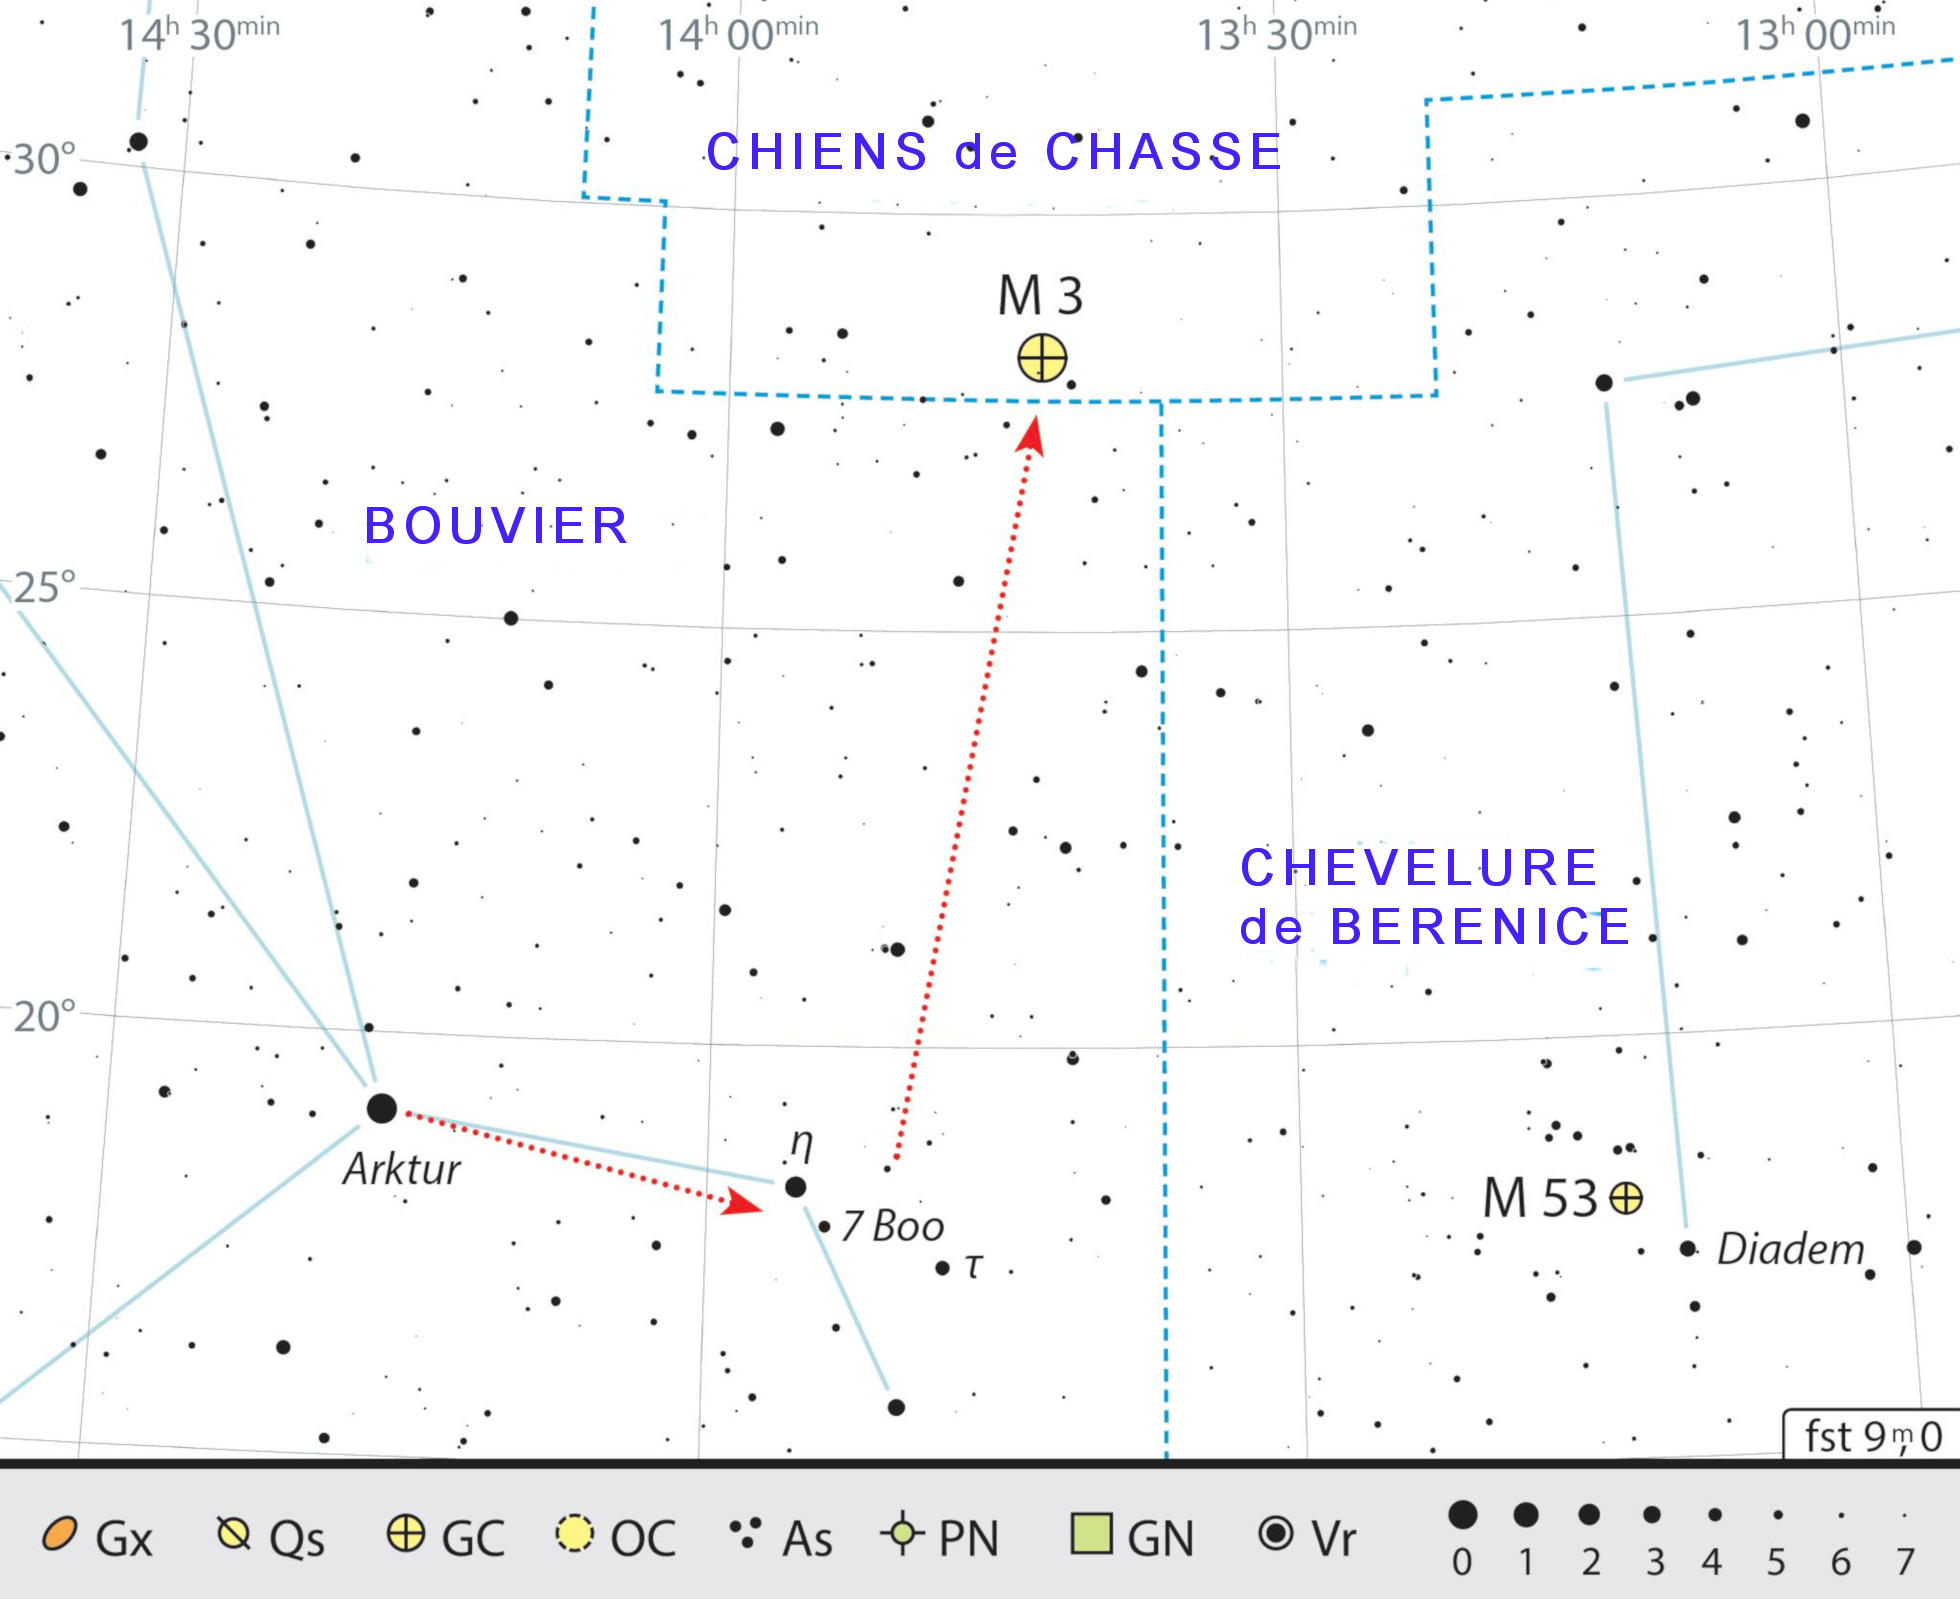 Carte de recherche pour M 3 dans la constellation du Chien de Chasse. J. Scholte